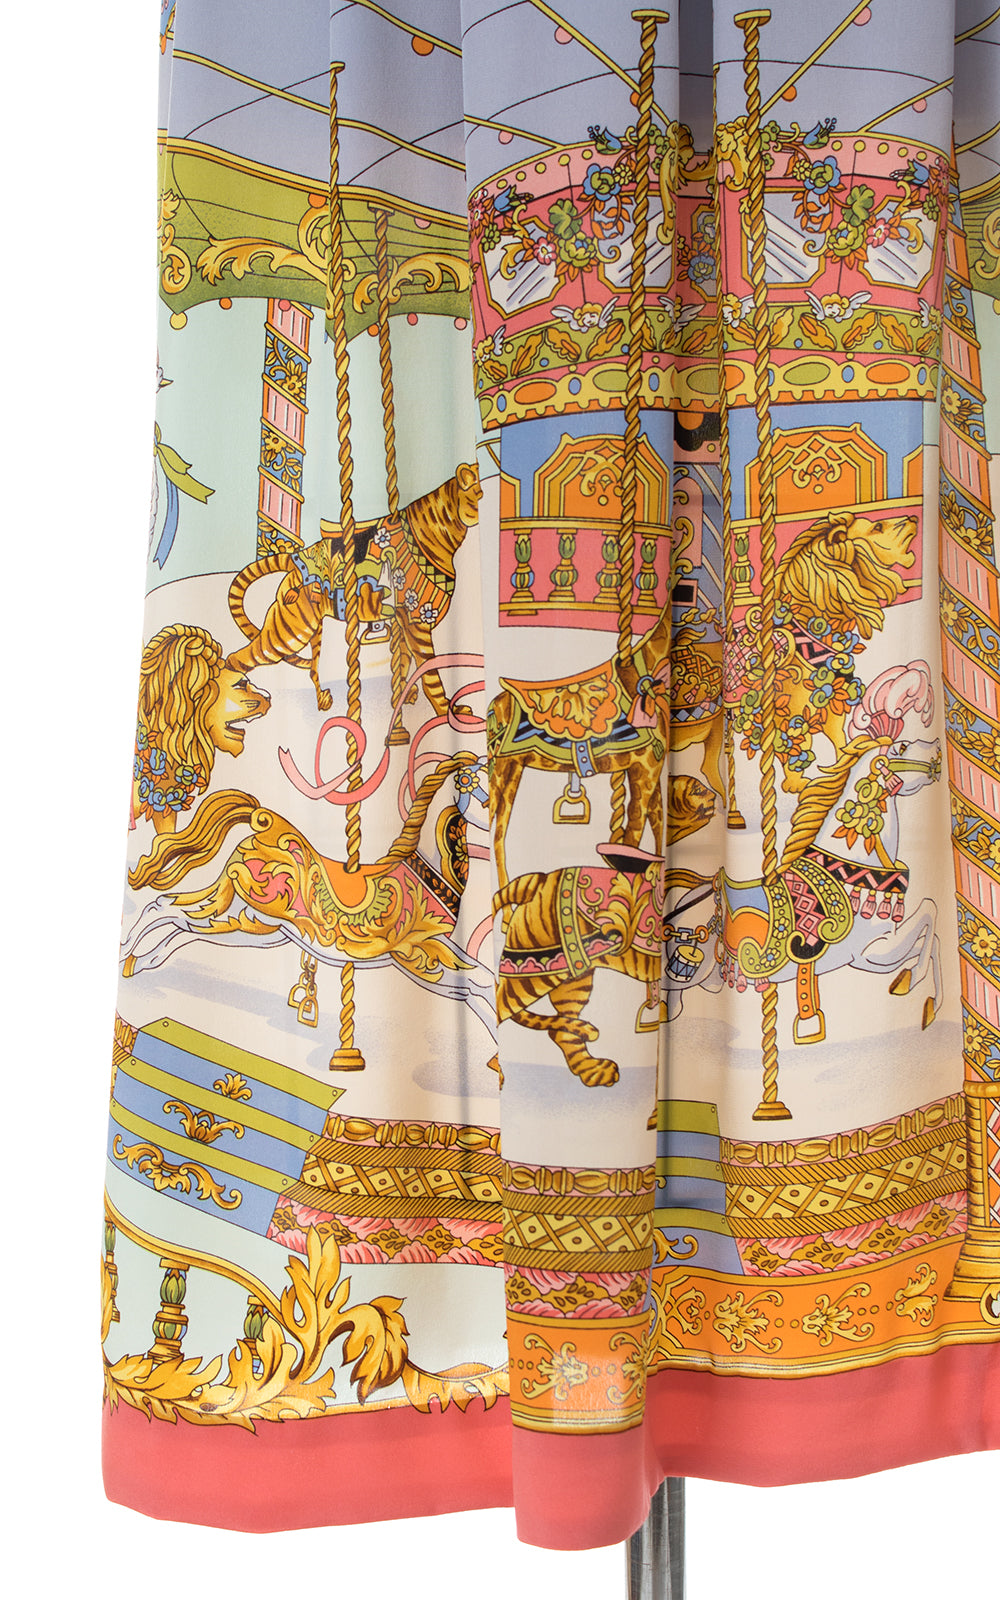 1980s Silk Carousel Novelty Print Skirt